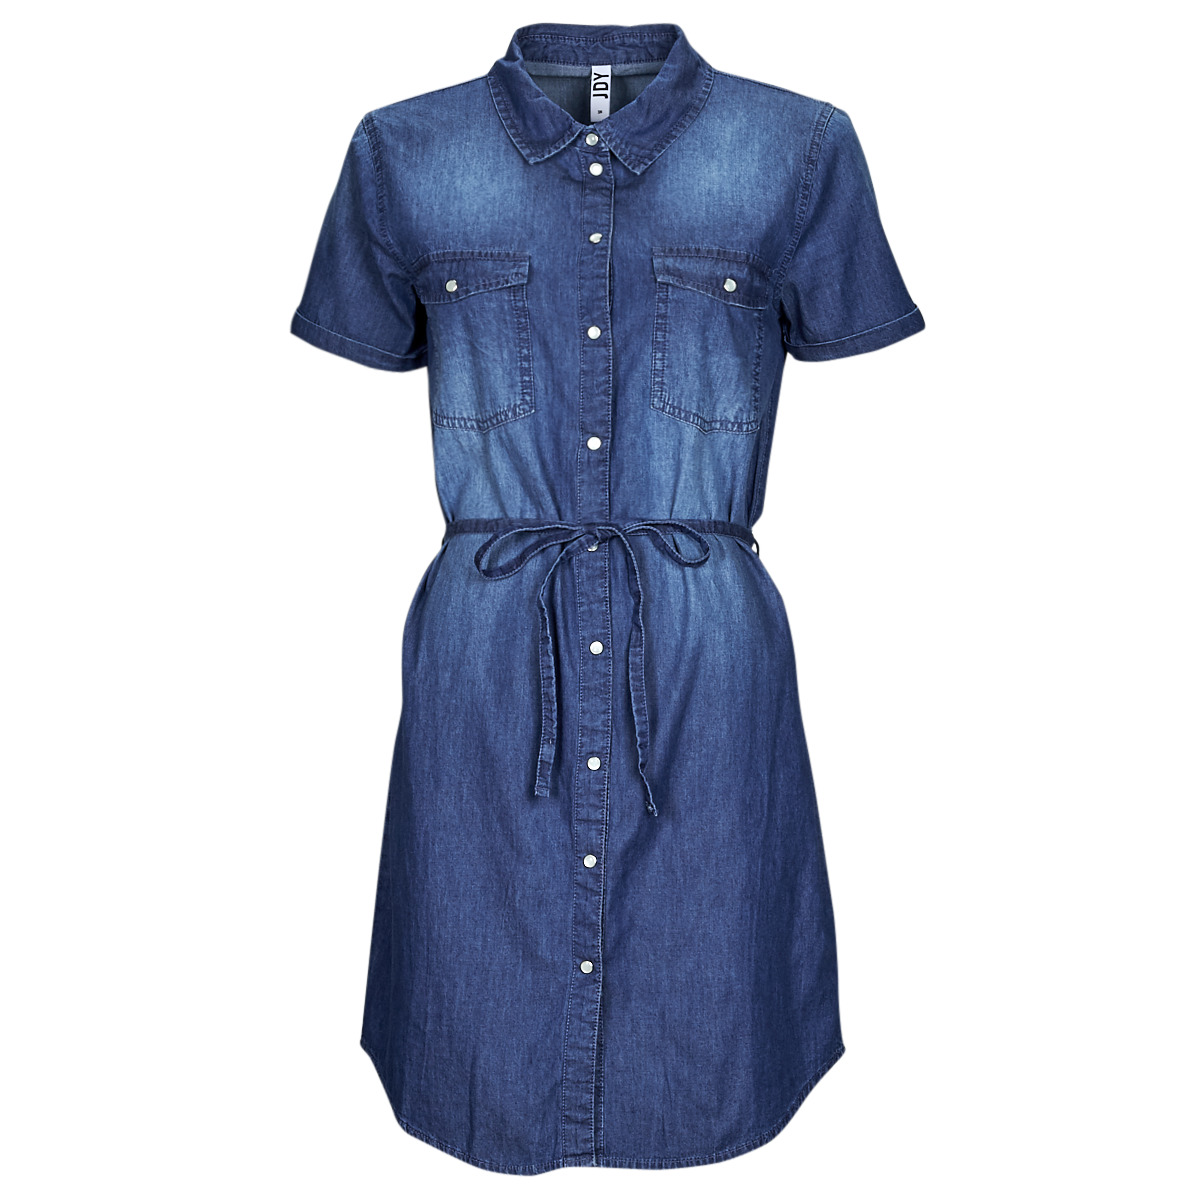 vaatteet Naiset Lyhyt mekko JDY JDYBELLA S/S SHIRT DRESS Sininen